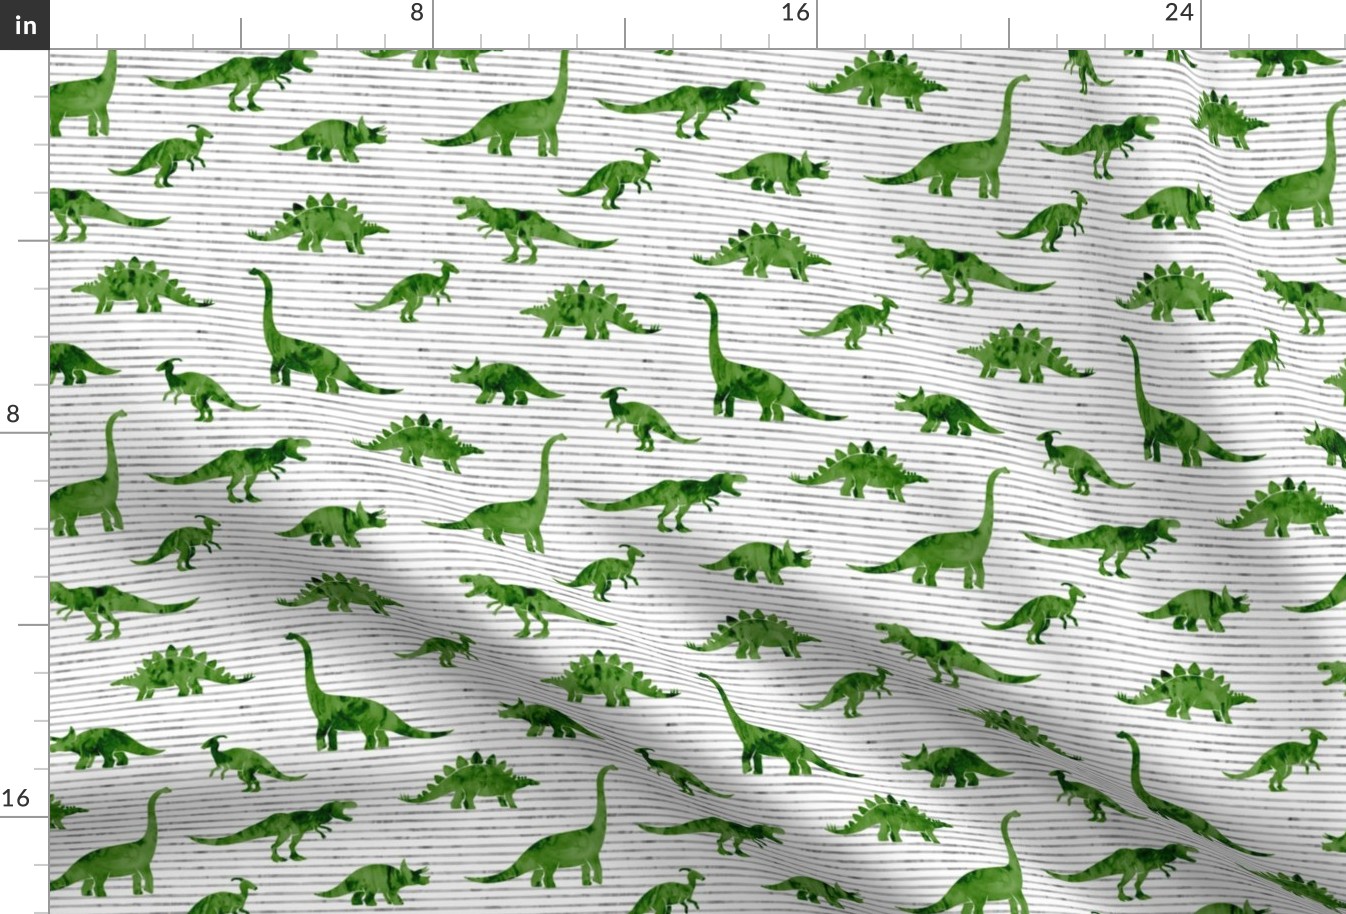 Dinosaurs - Dinos watercolor - green  - LAD19